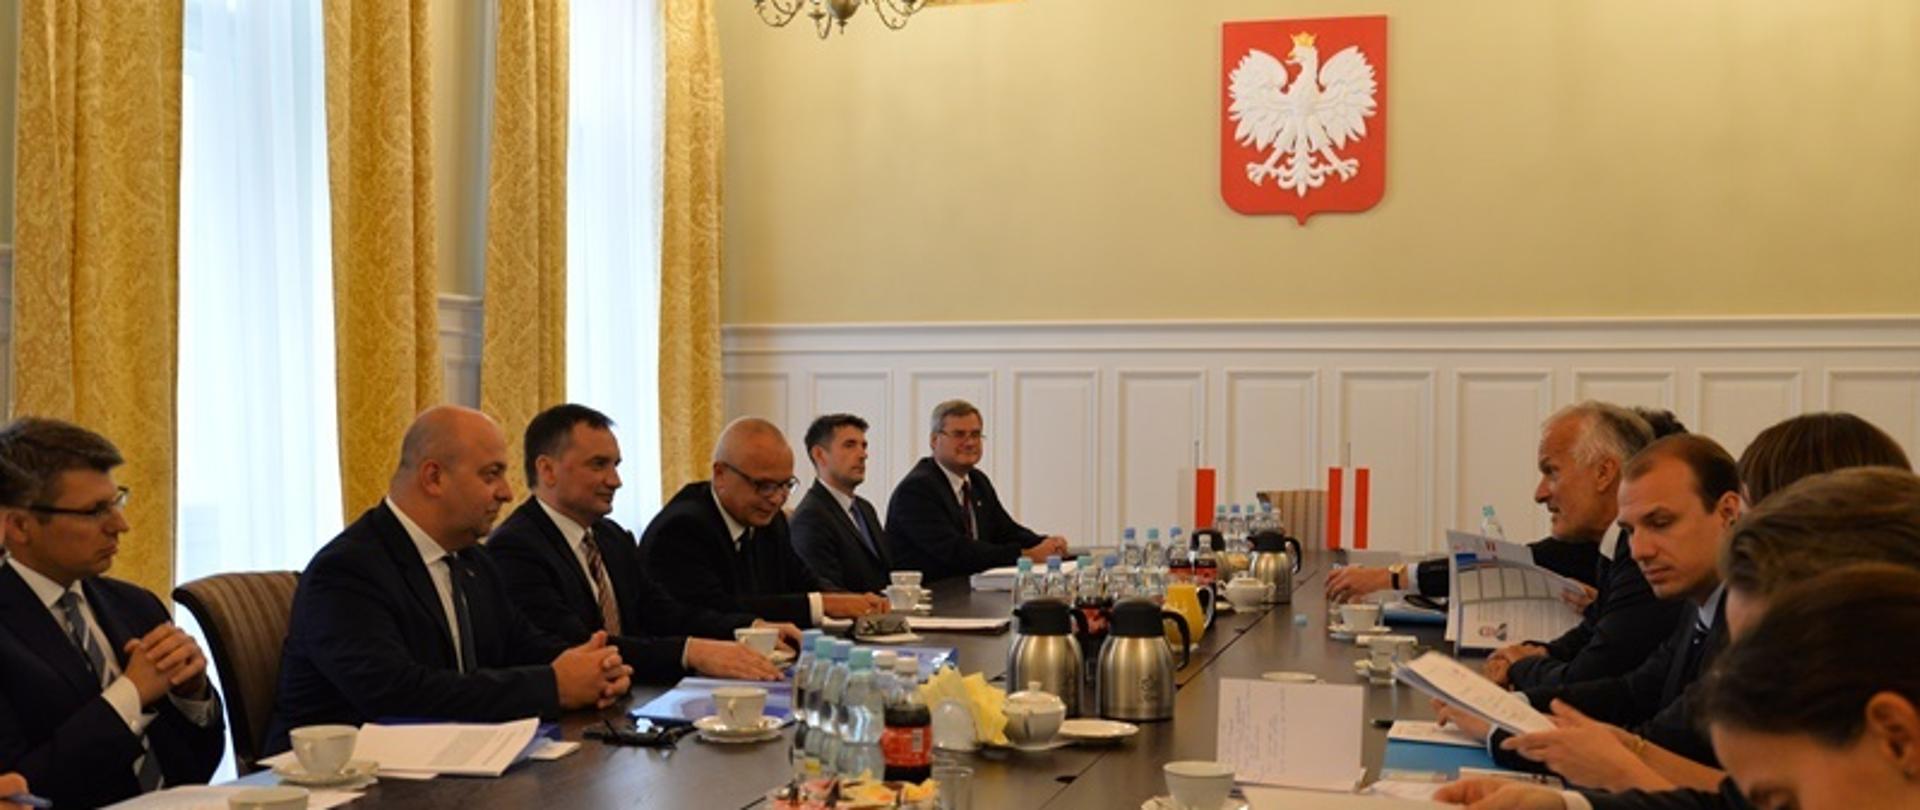 Spotkanie Zbigniewa Ziobro z ministrem sprawiedliwości Austrii